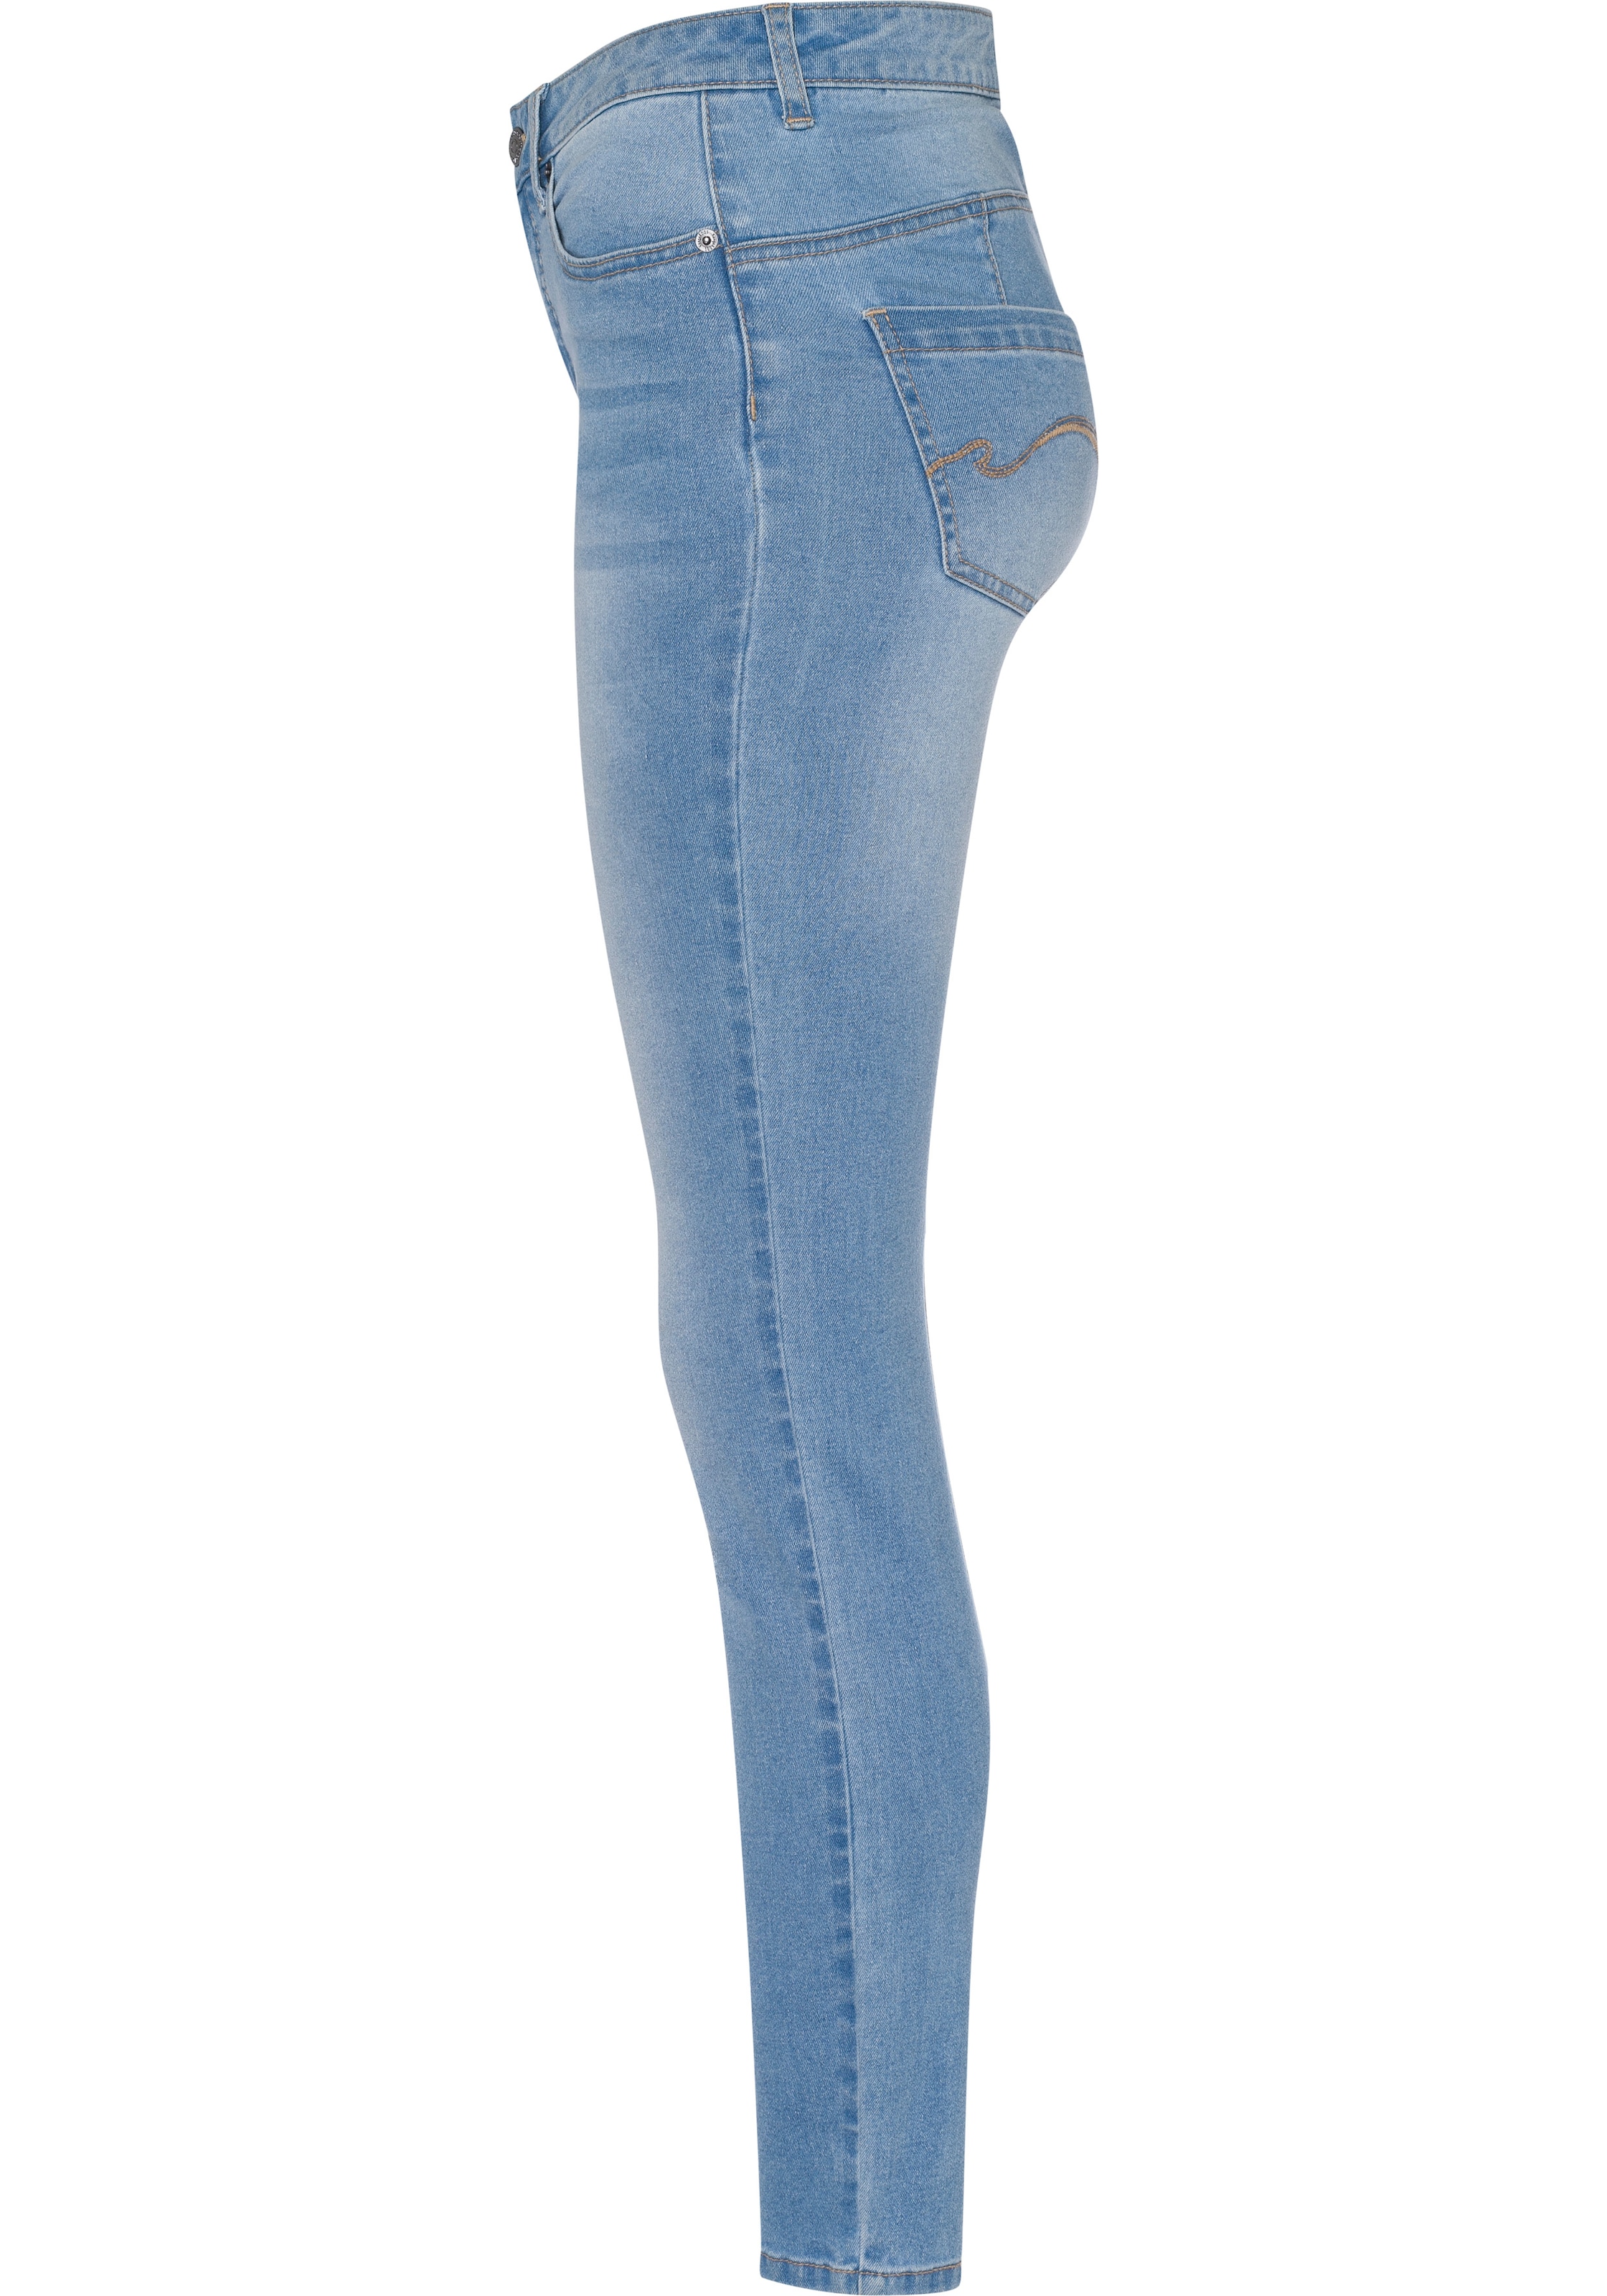 Slim-fit-Jeans FIT«, SLIM KangaROOS HIGH KOLLEKTION »CROPPED bestellen NEUE WAIST